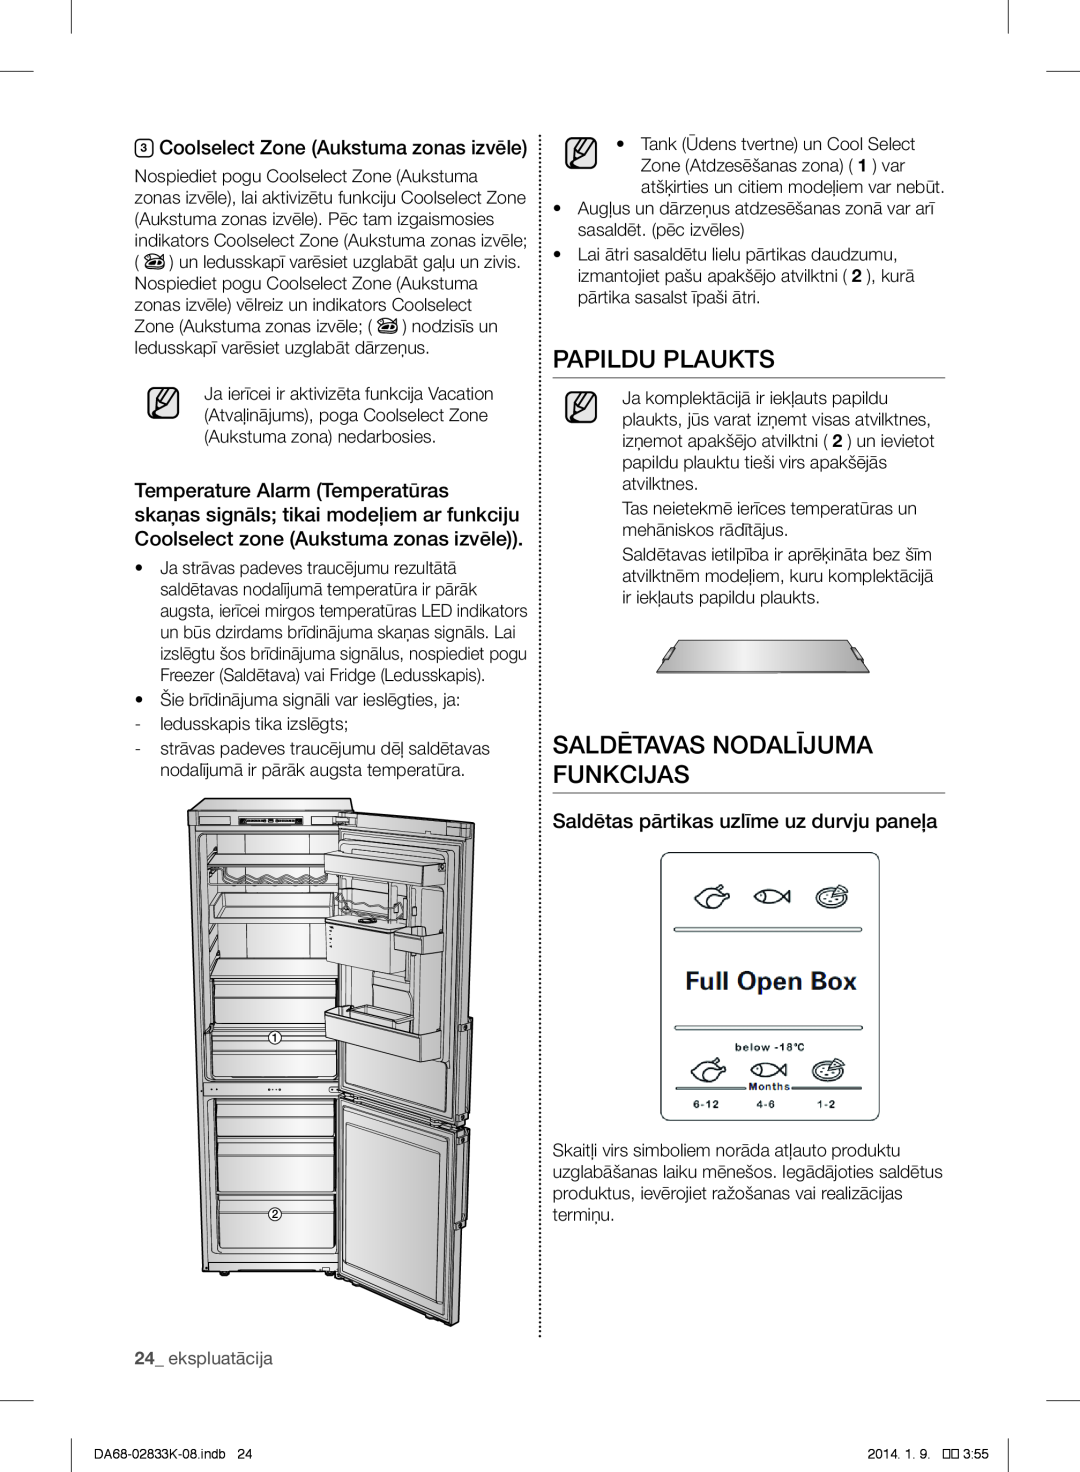 Samsung RB33J3420SS/EF manual Papildu Plaukts, Saldētavas Nodalījuma Funkcijas, Coolselect Zone Aukstuma zonas izvēle 